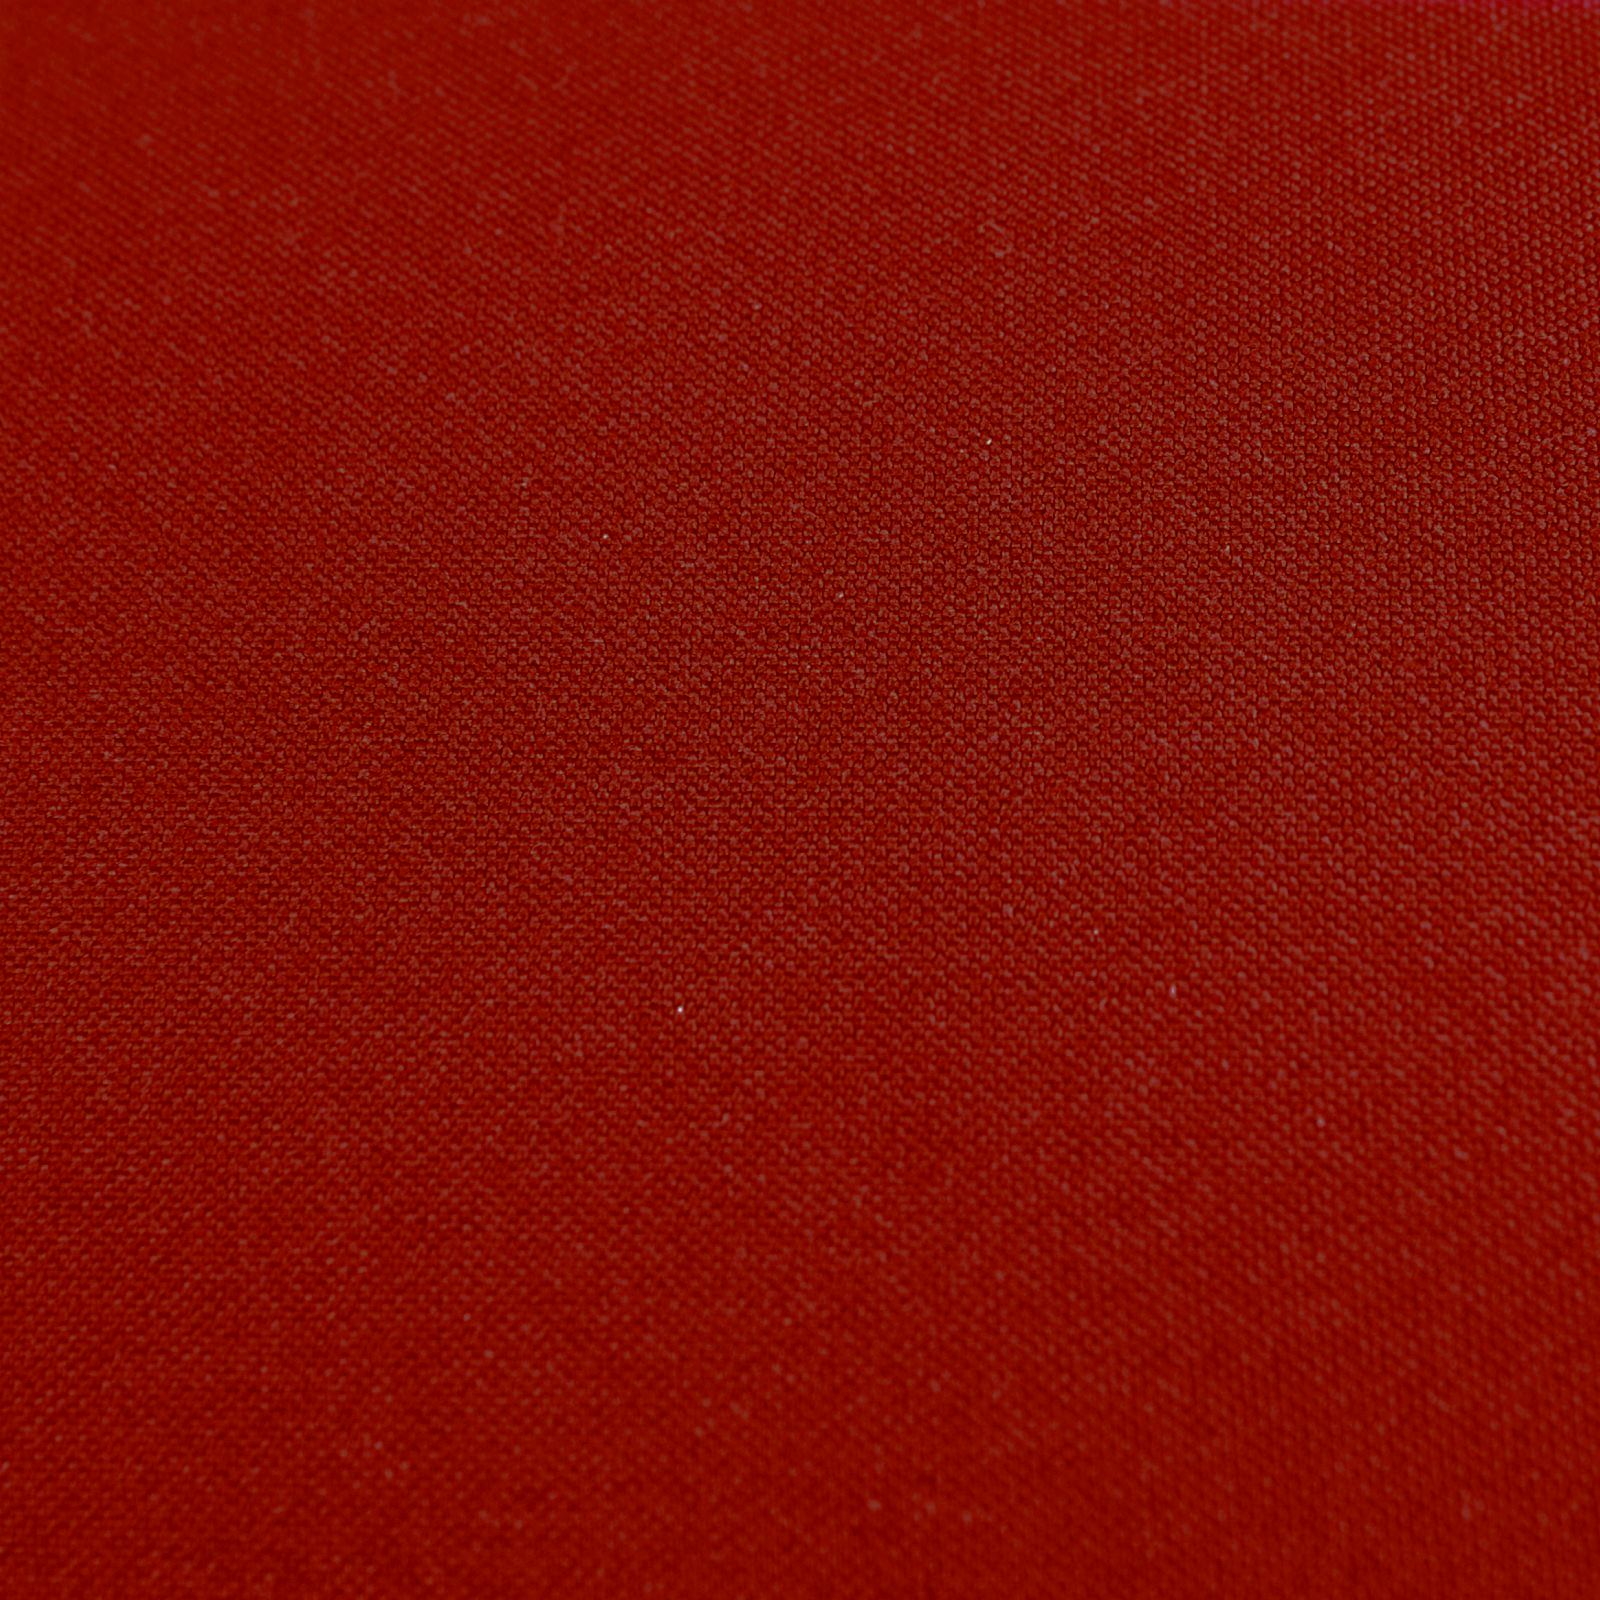 Komplettkissen Polyester-Bordeaux Rot / 40x40 cm